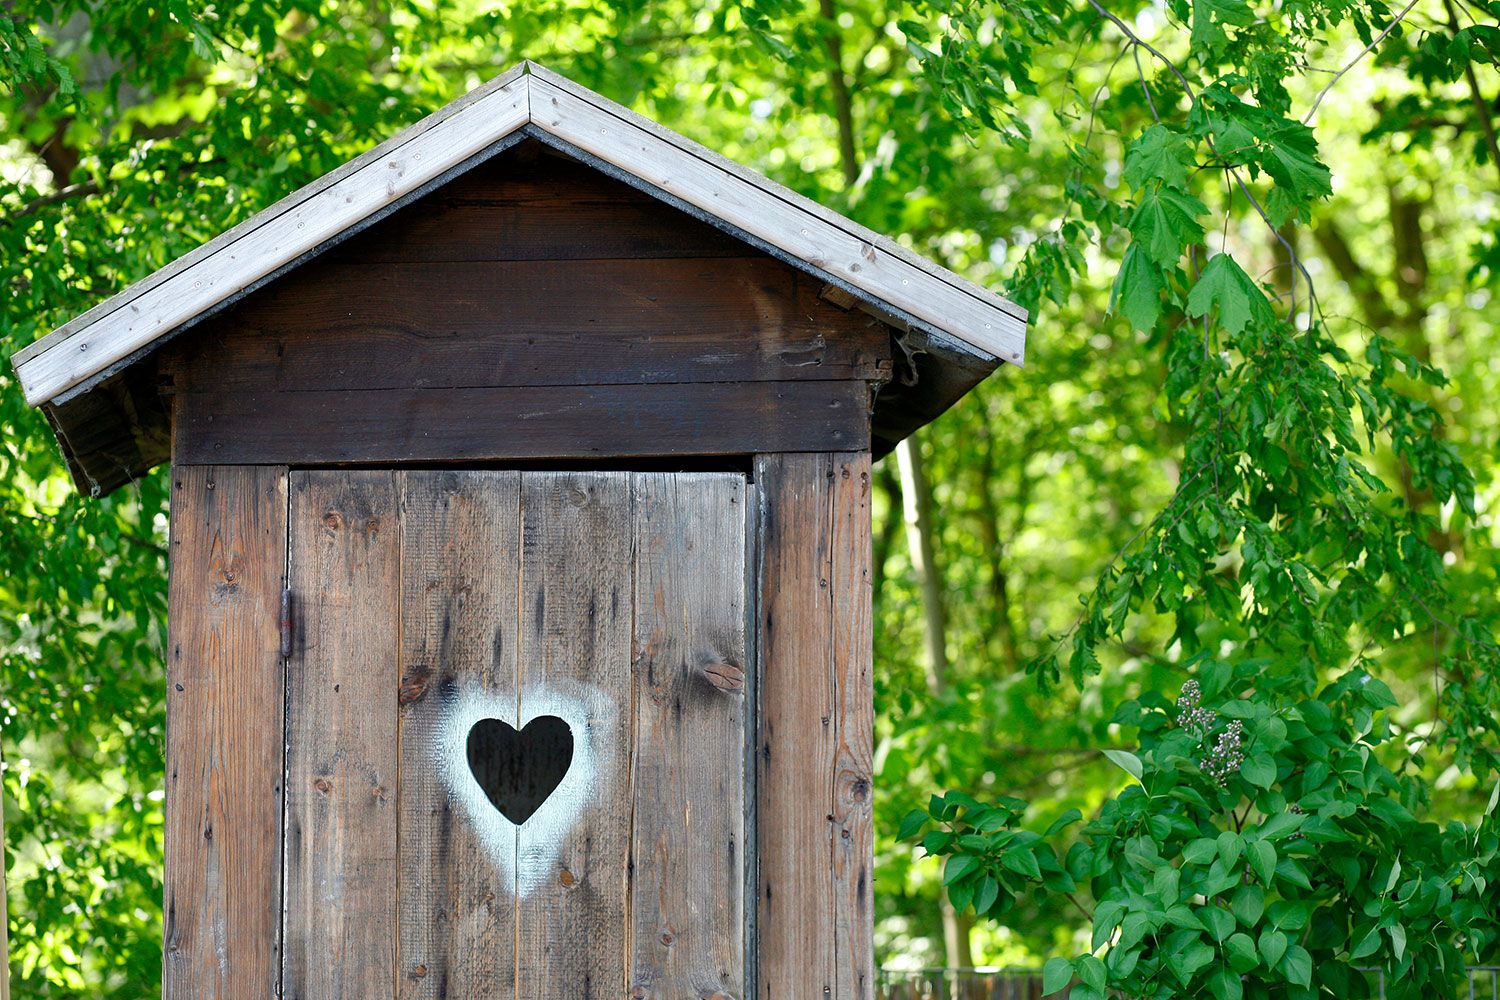 Naturkita Waldforscher - Das stille Örtchen, ein kleines Holzhaus mit Herz und spitzem Giebel vor der Waldkulisse.